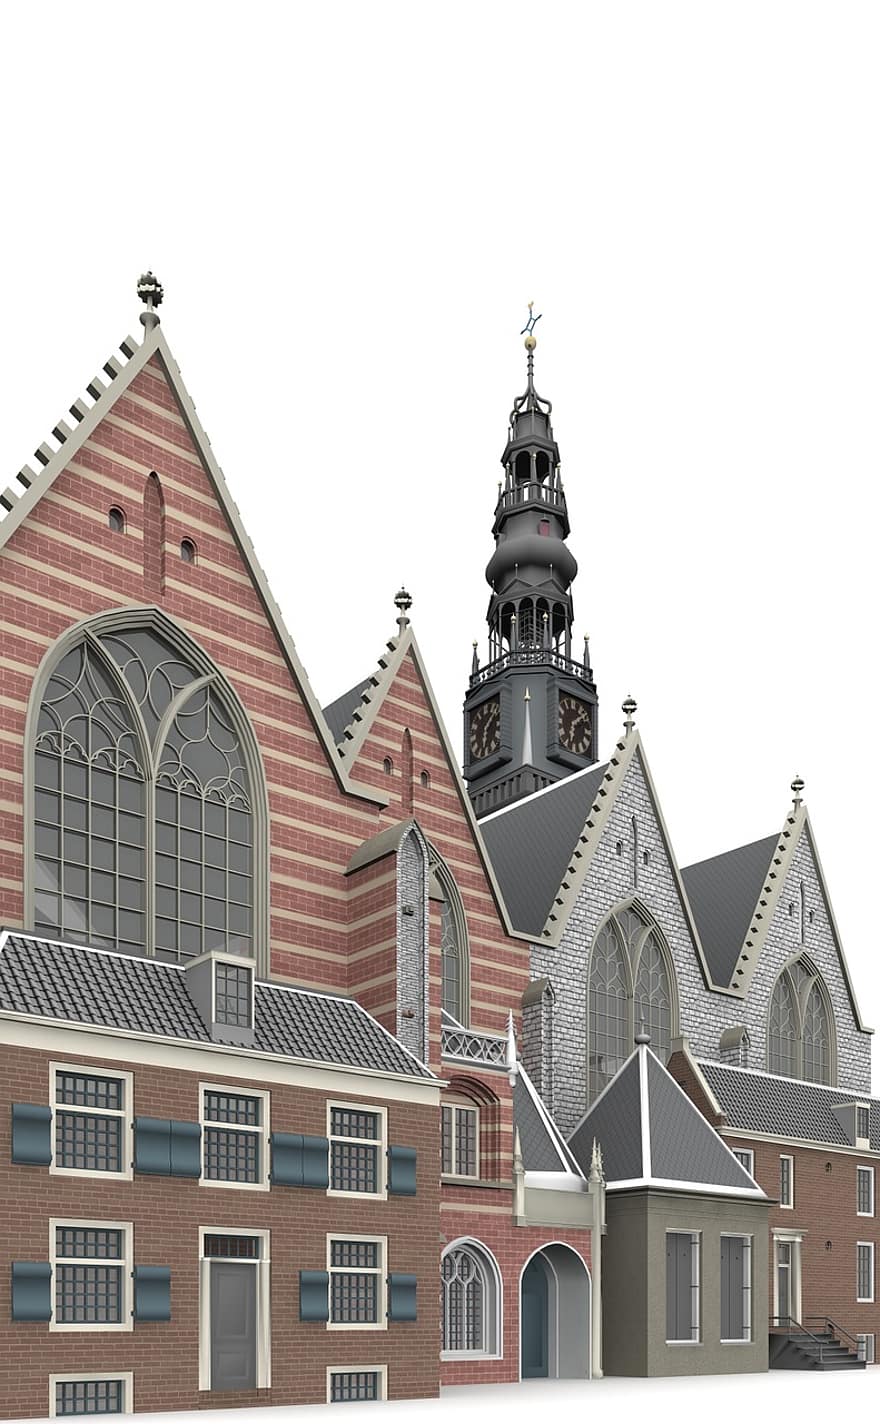 Oude, керк, Амстердам, архитектура, строительство, церковь, достопримечательности, исторически, туристы, Привлечение, ориентир